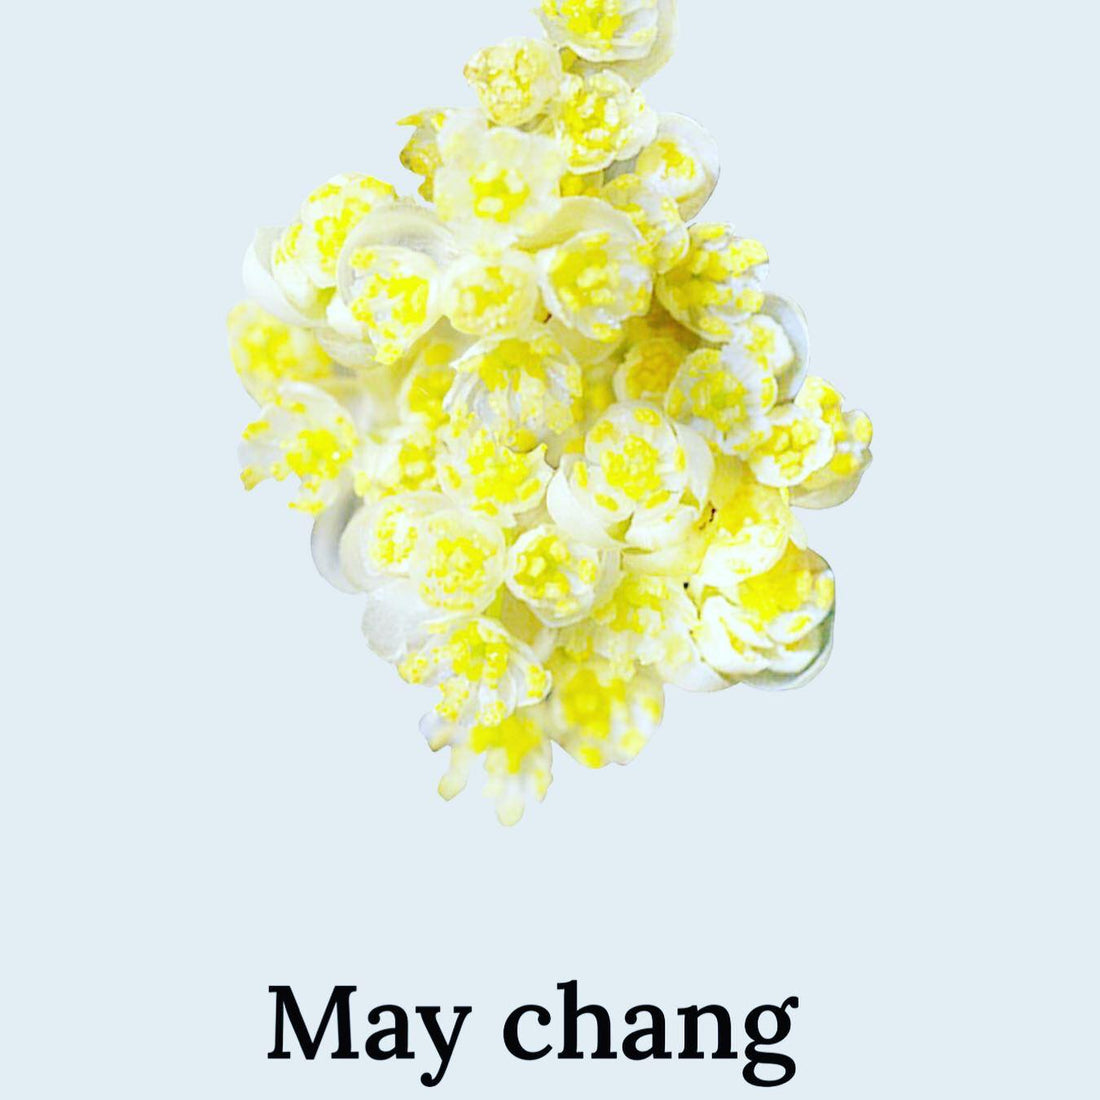 May Chang oil